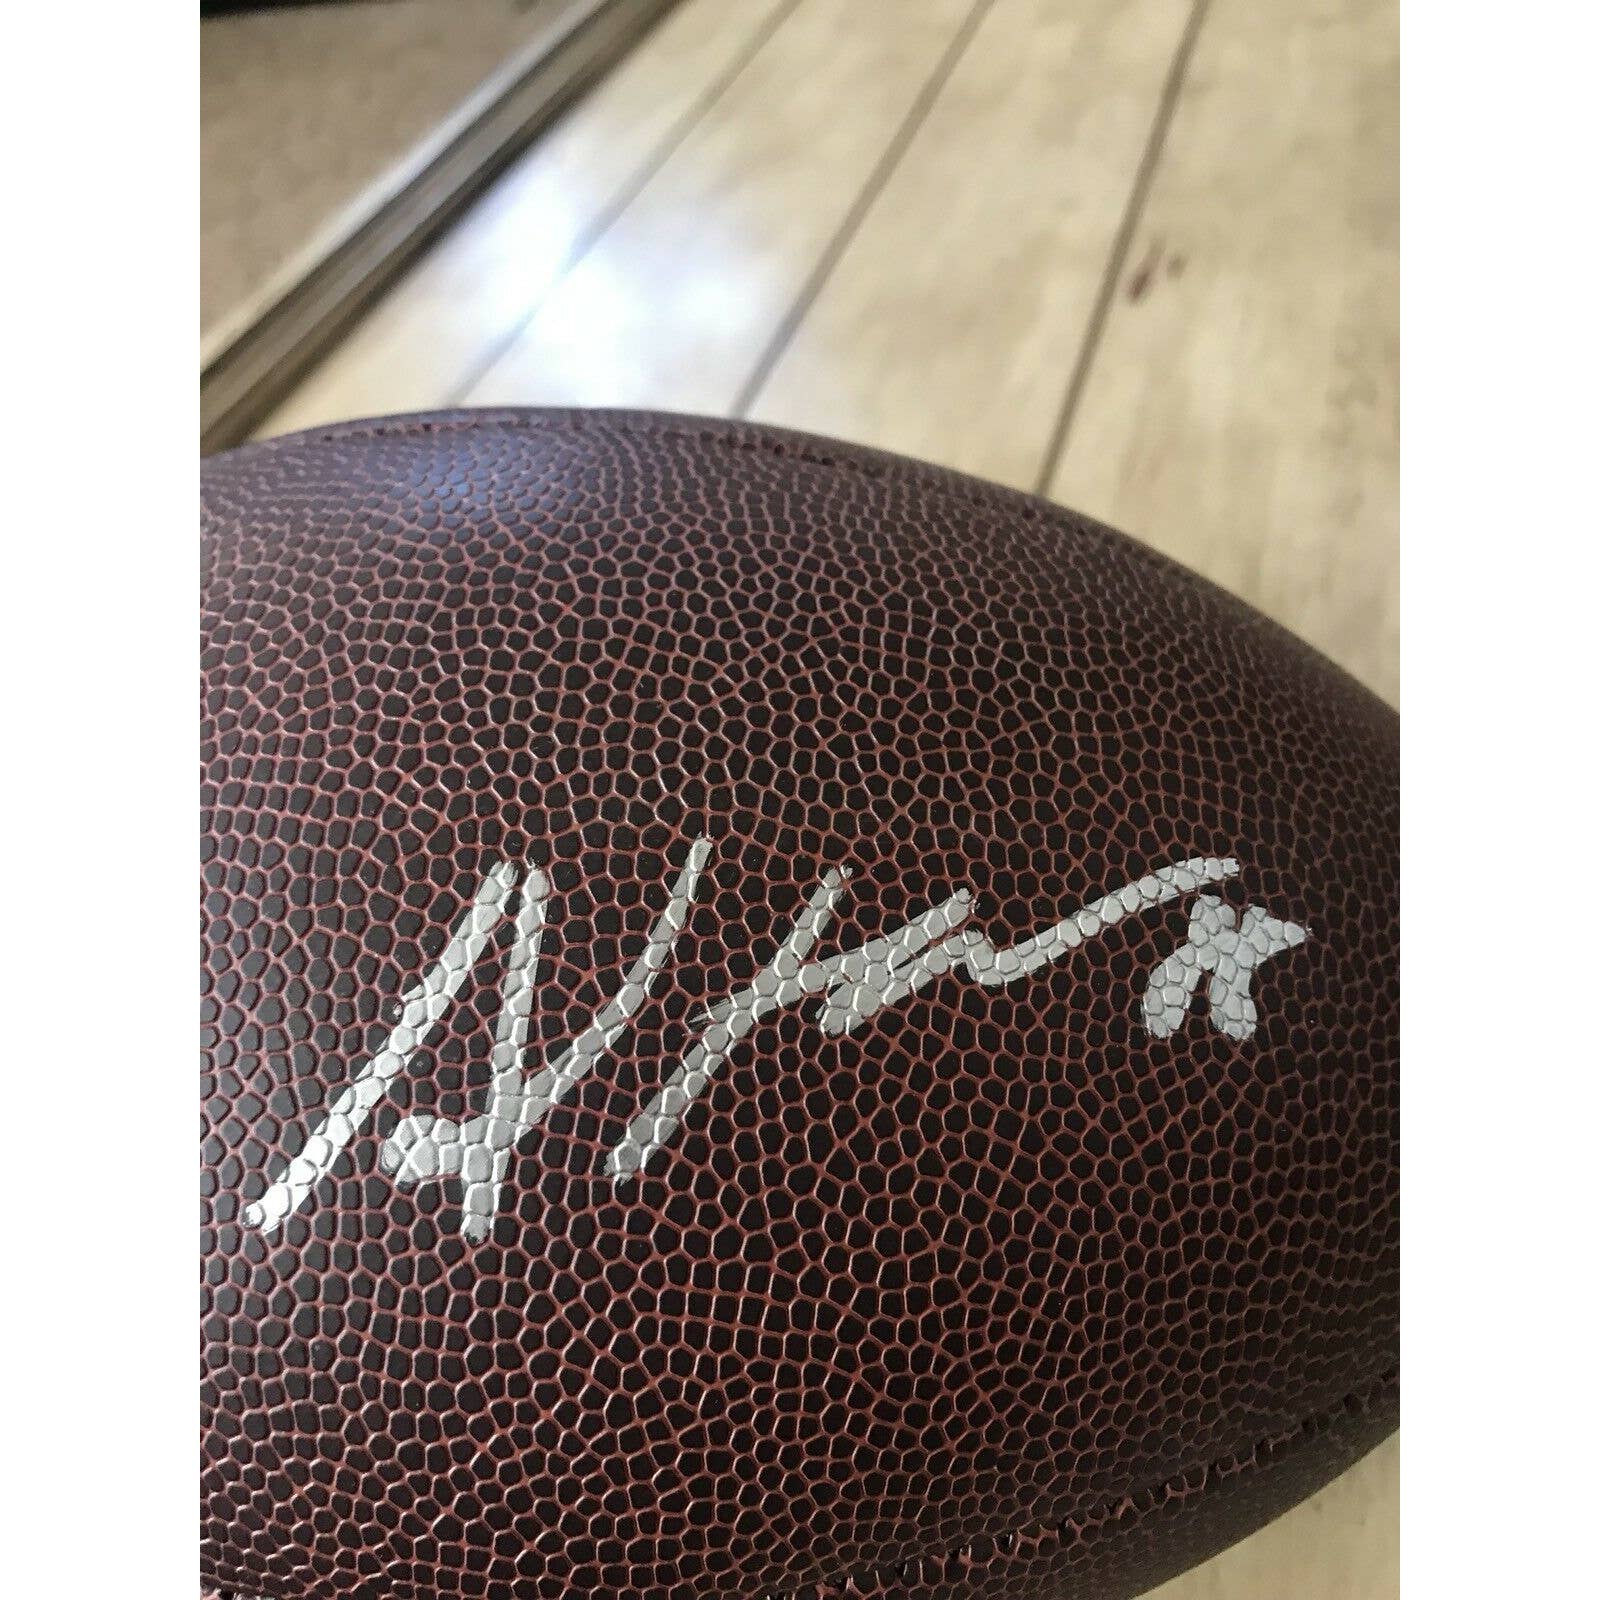 Allen Hurns Autographed/Signed Football PSA/DNA COA Dallas Cowboys Jaguars - TreasuresEvolved